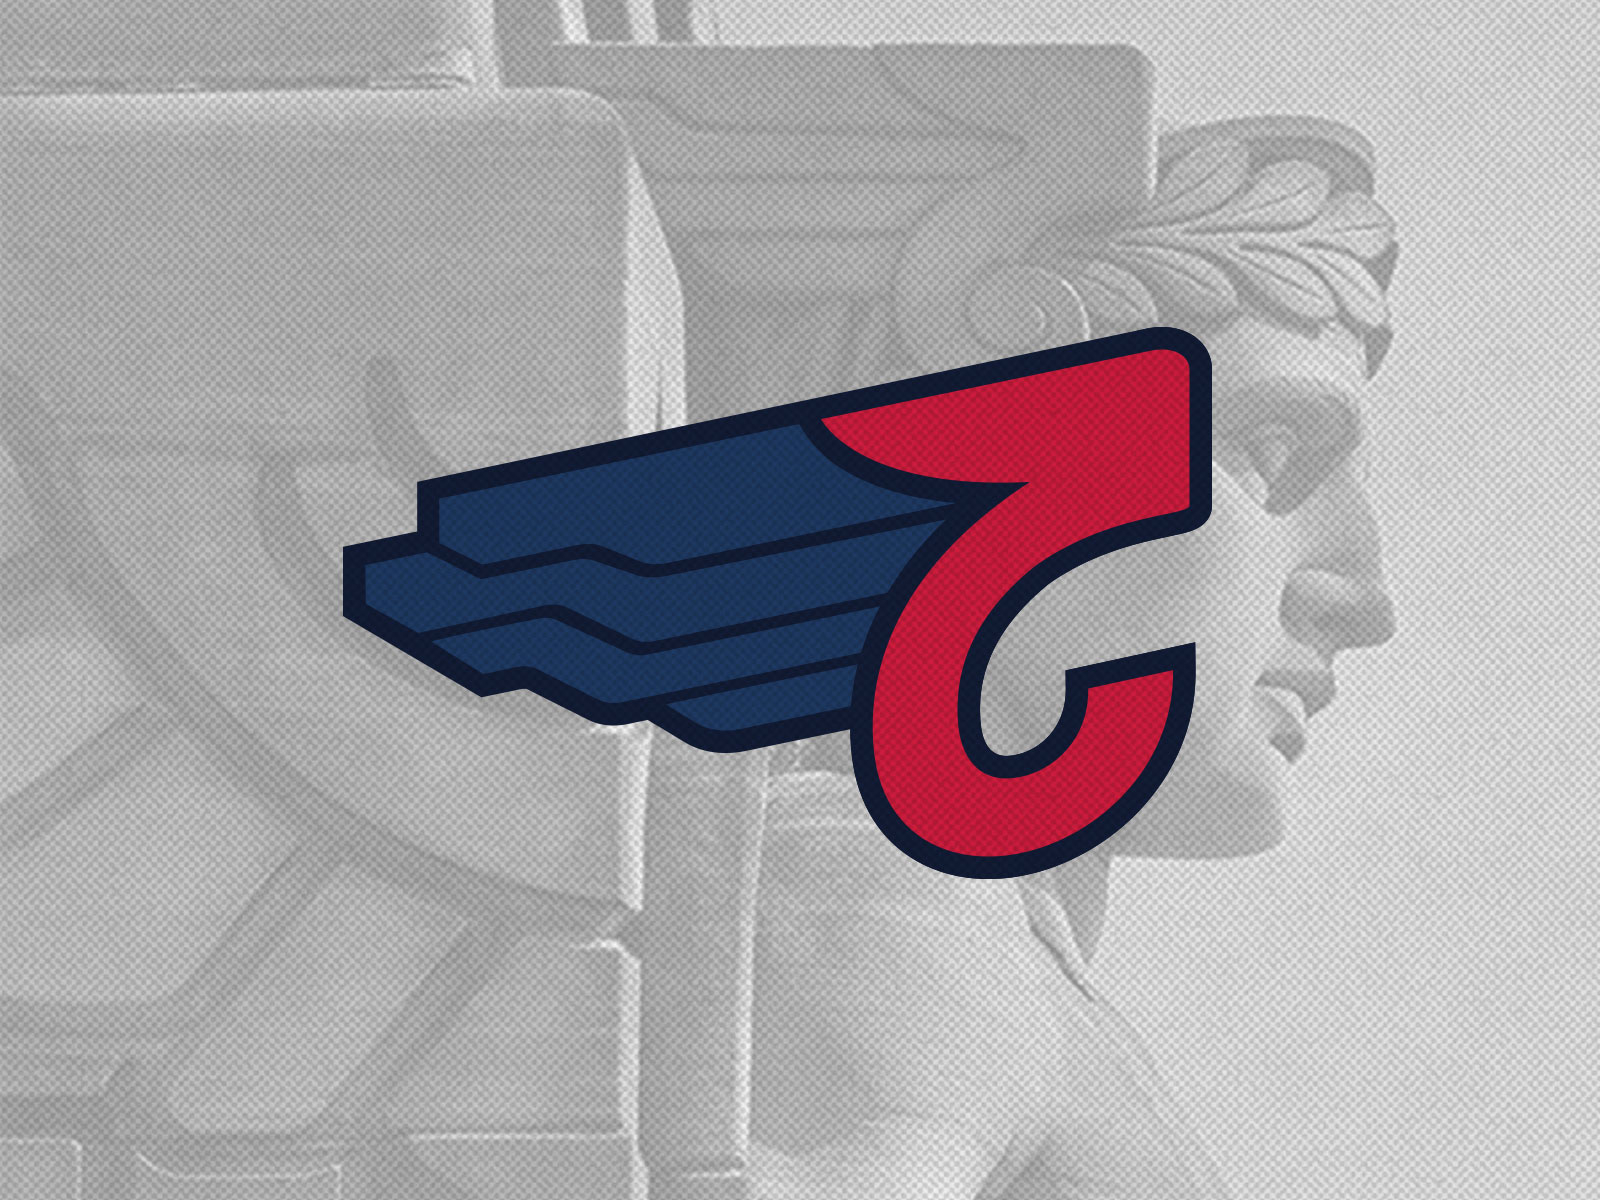 Cleveland Guardians Wordmark by Joe Rossi on Dribbble